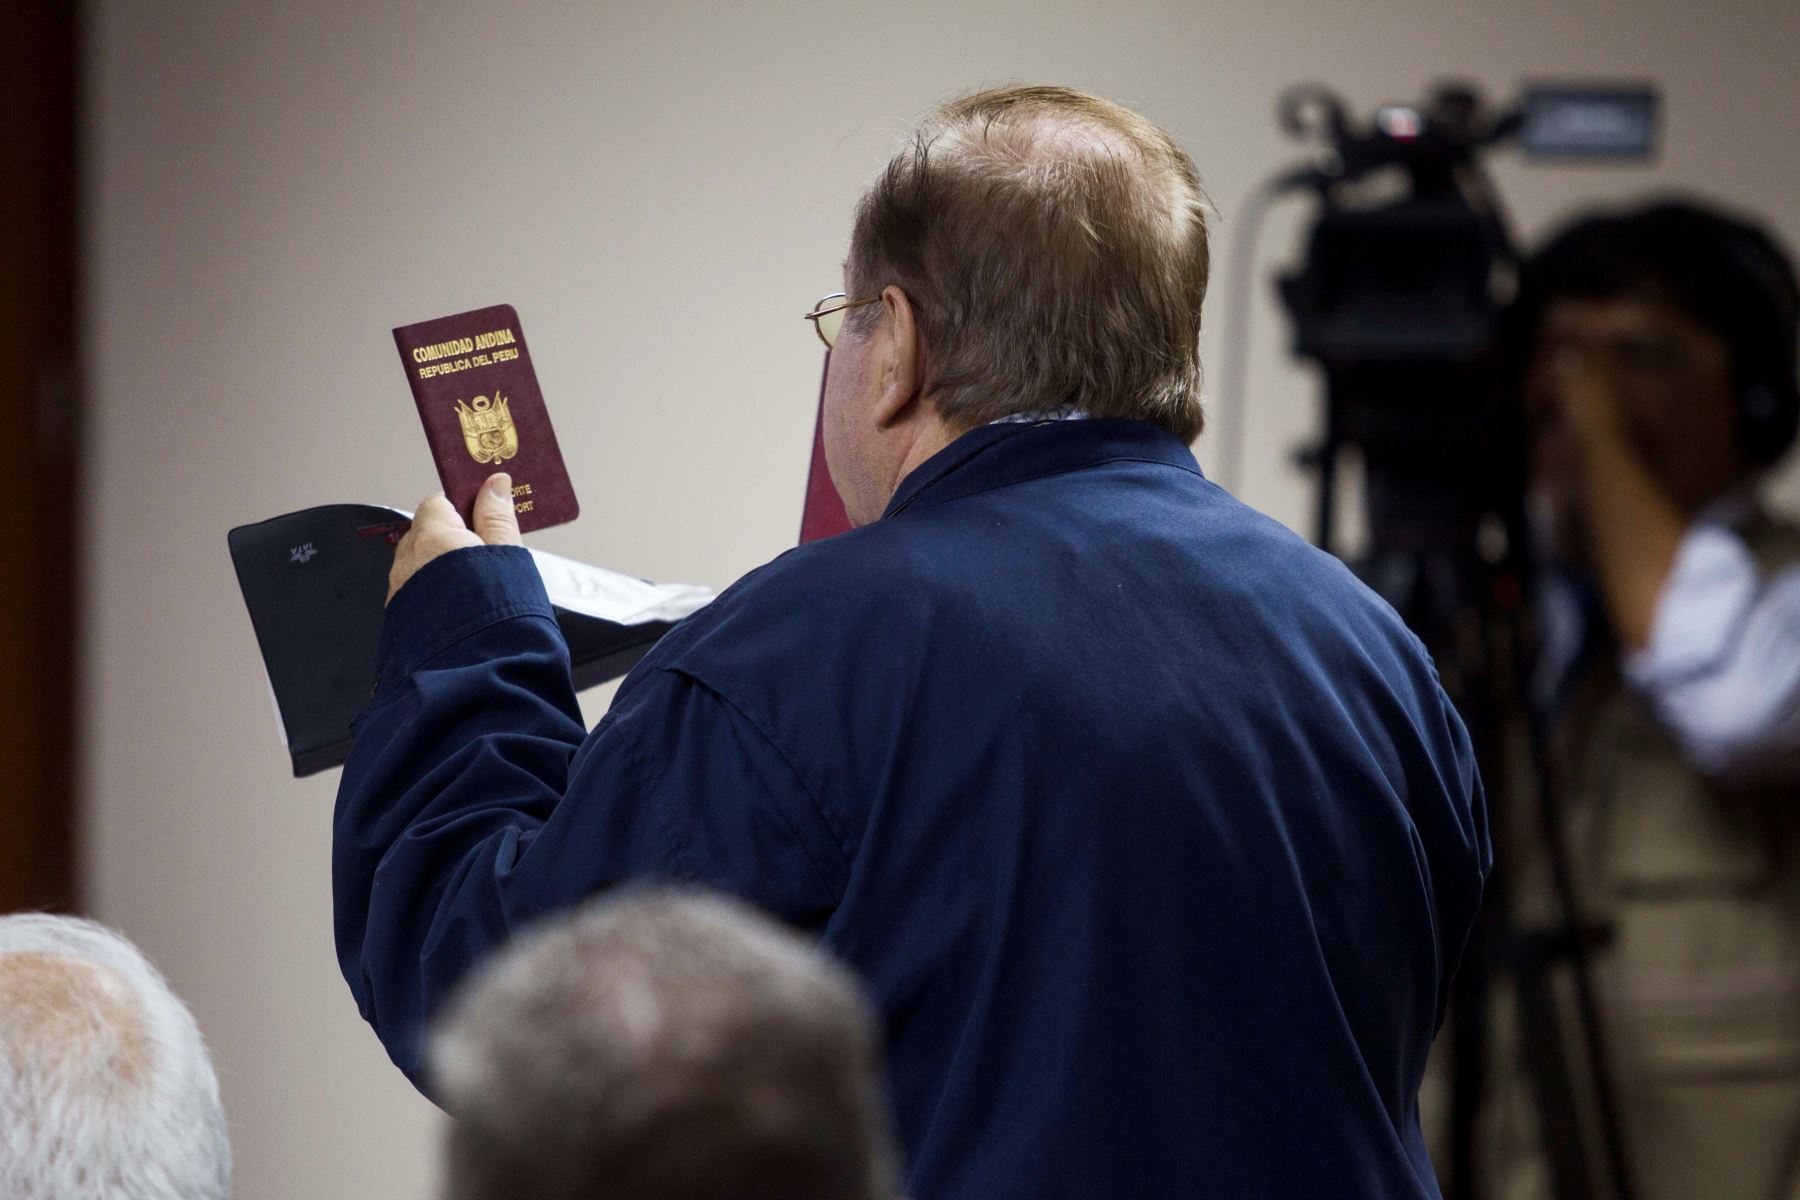 El exministro de la Producción, Luis Nava, entrega su pasaporte a los jueces para acreditar que no se fugará del país este martes durante la audiencia de apelación donde se confirmó la detención preliminar por 10 días.
Foto: EFE